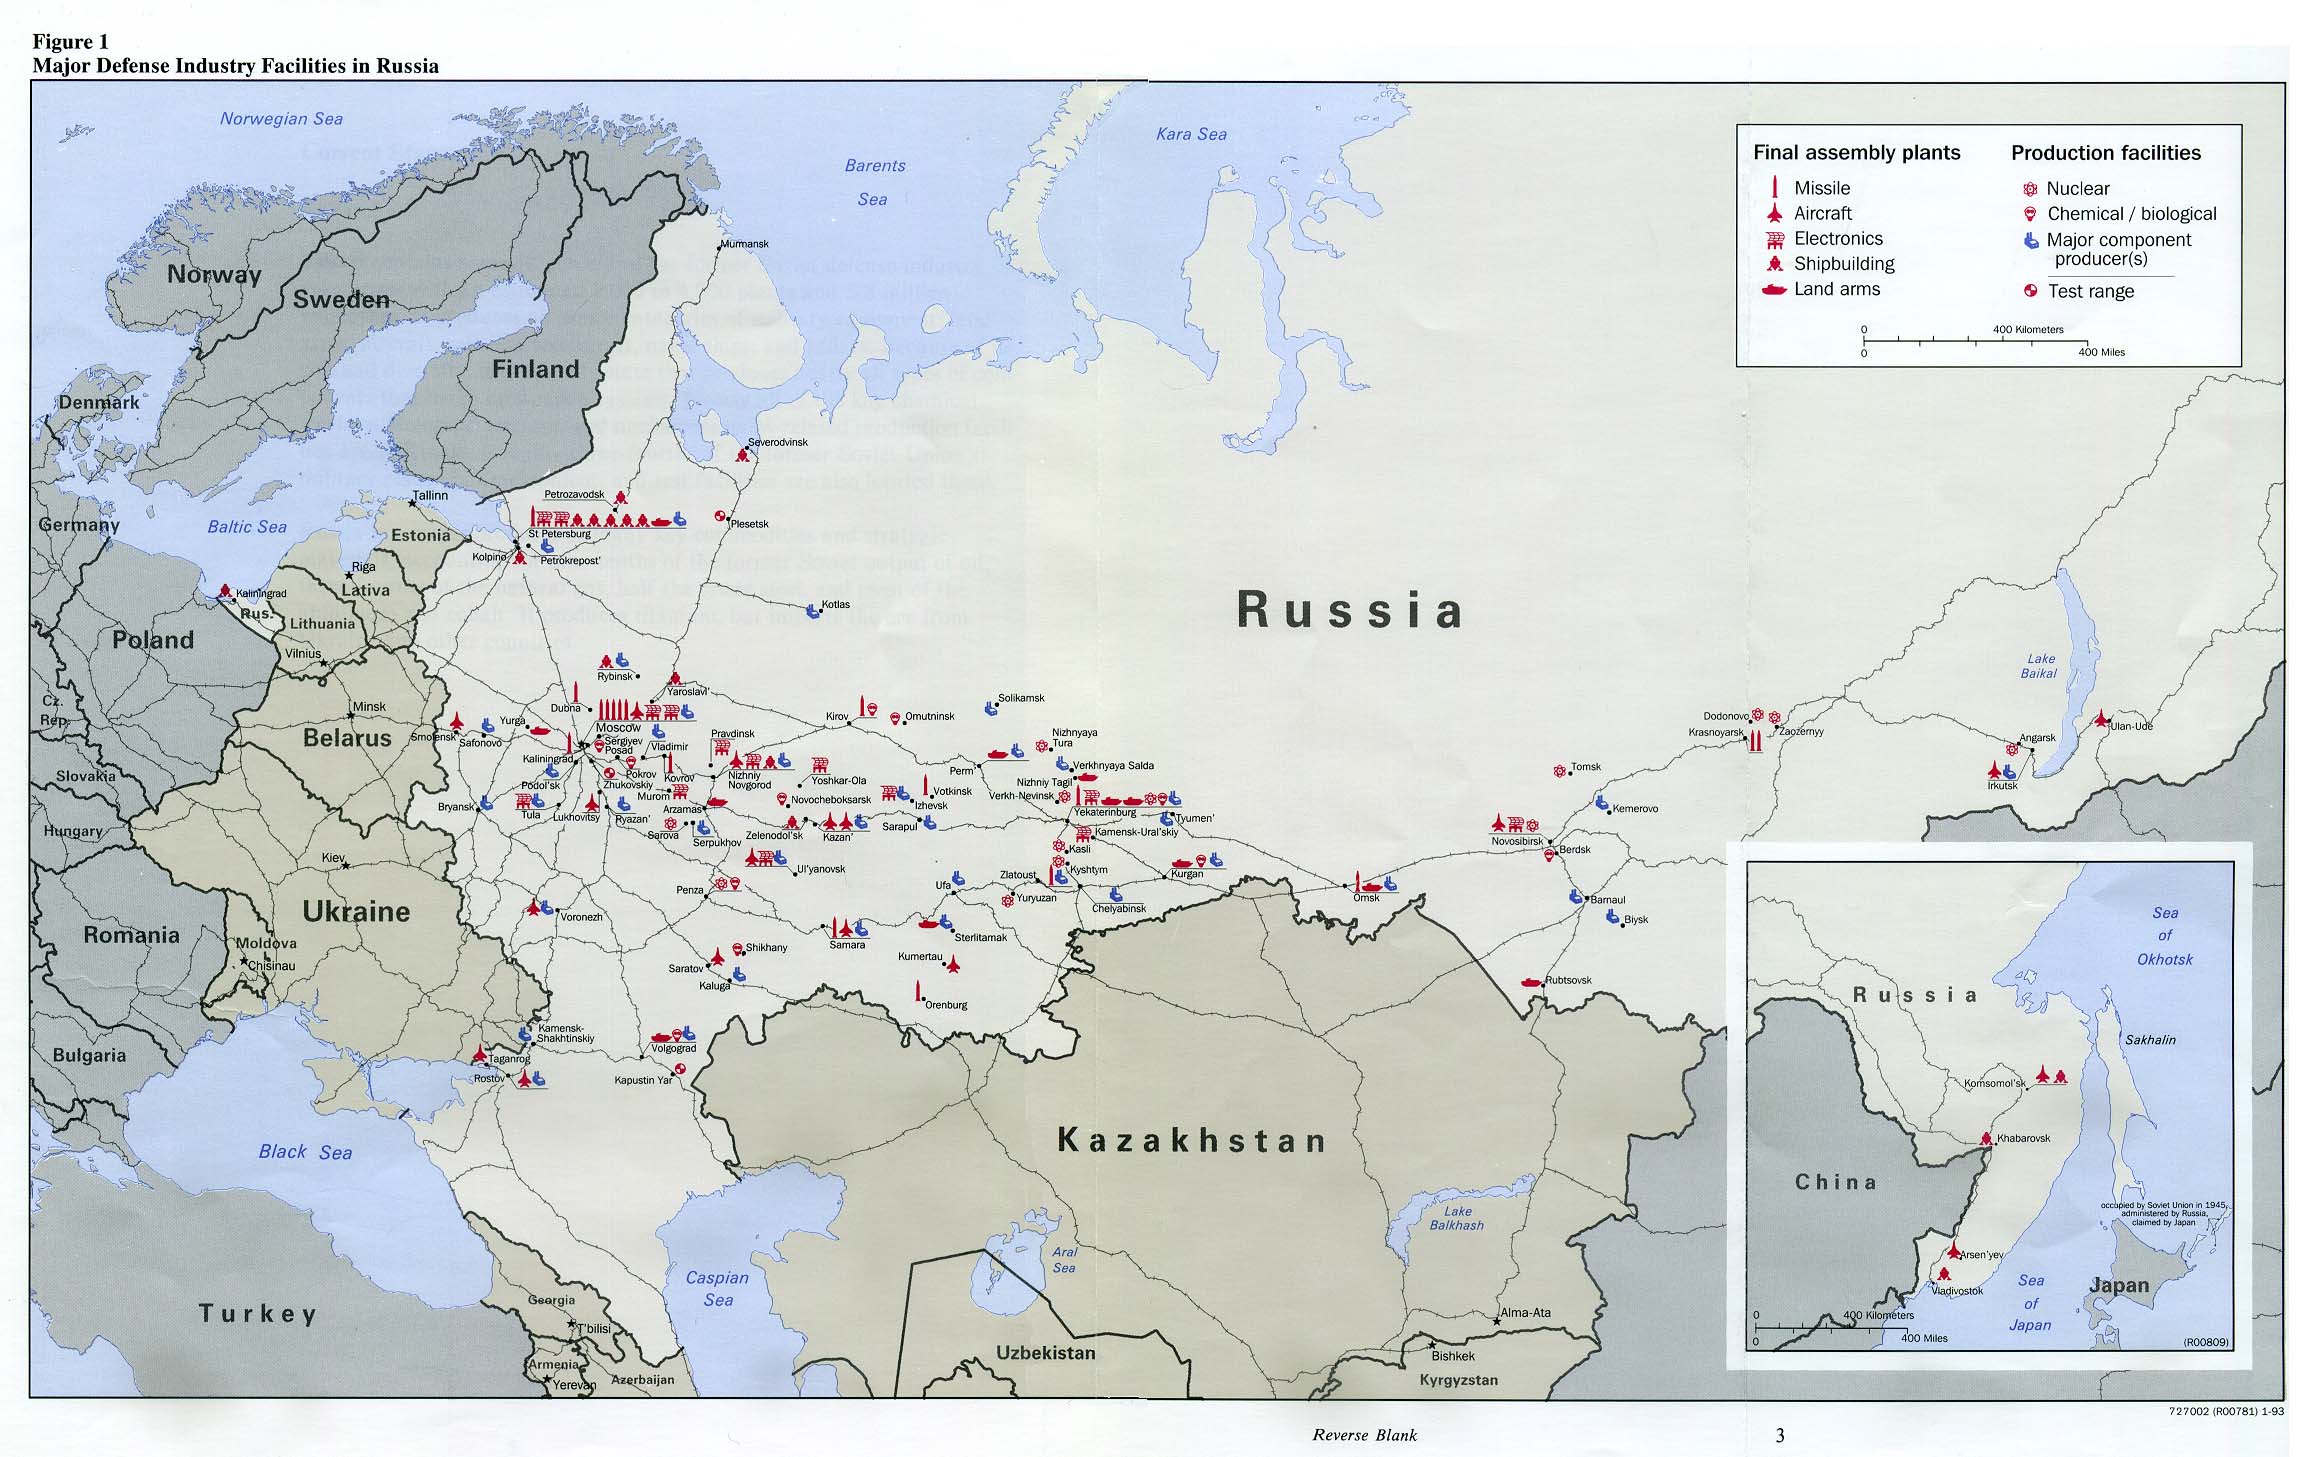 Mapa de las Principales Instalaciones de la Industria Defensa en Rusia